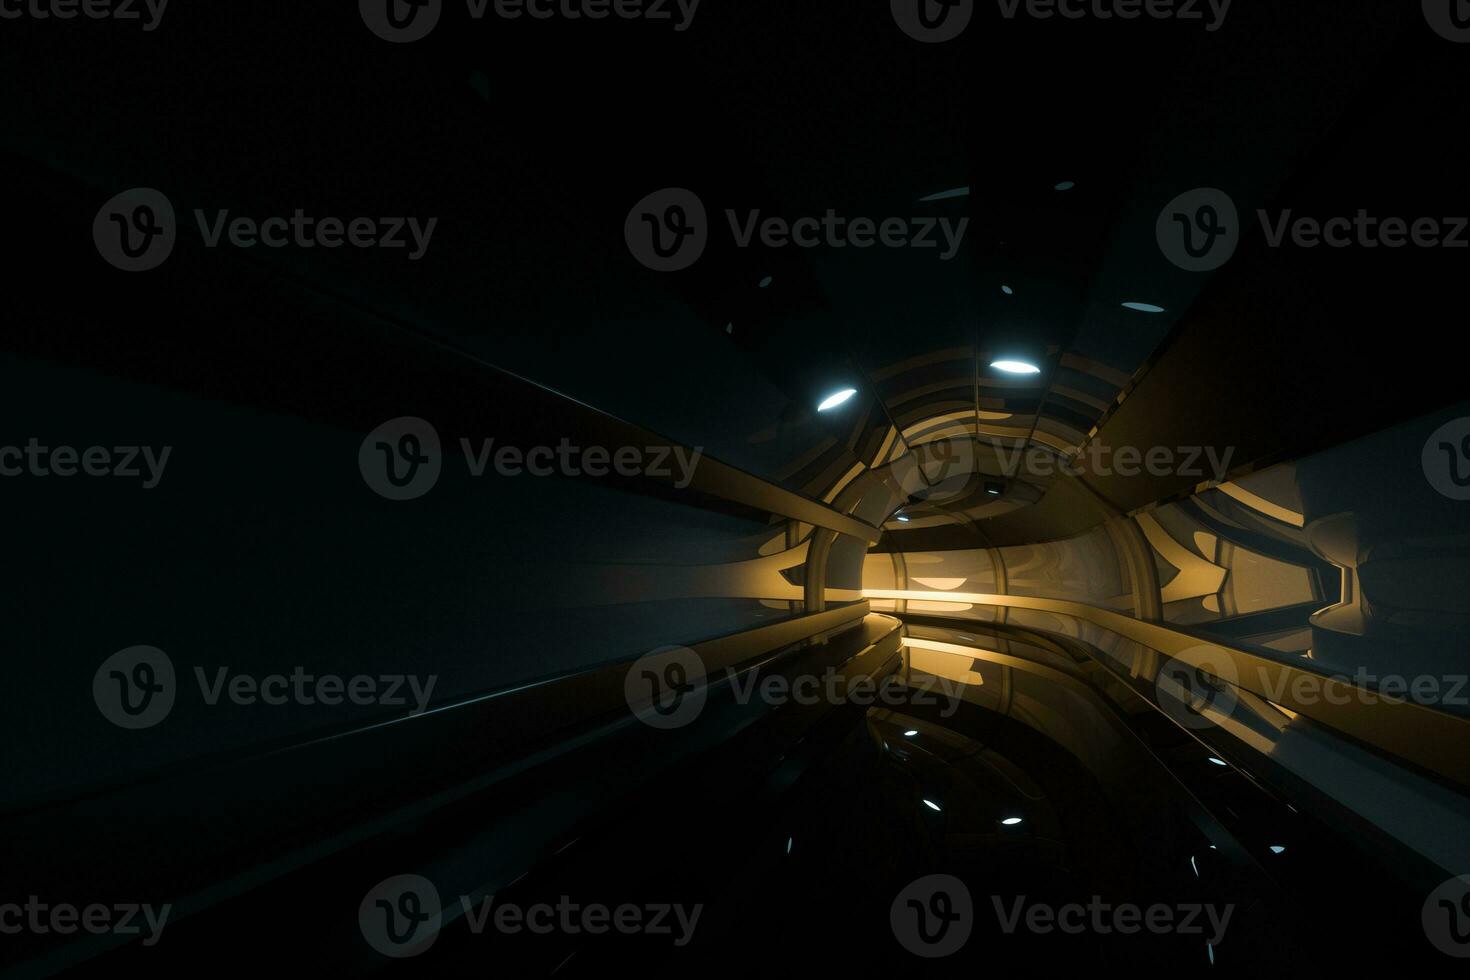 donker tunnel met licht Bij de einde, 3d weergave. foto